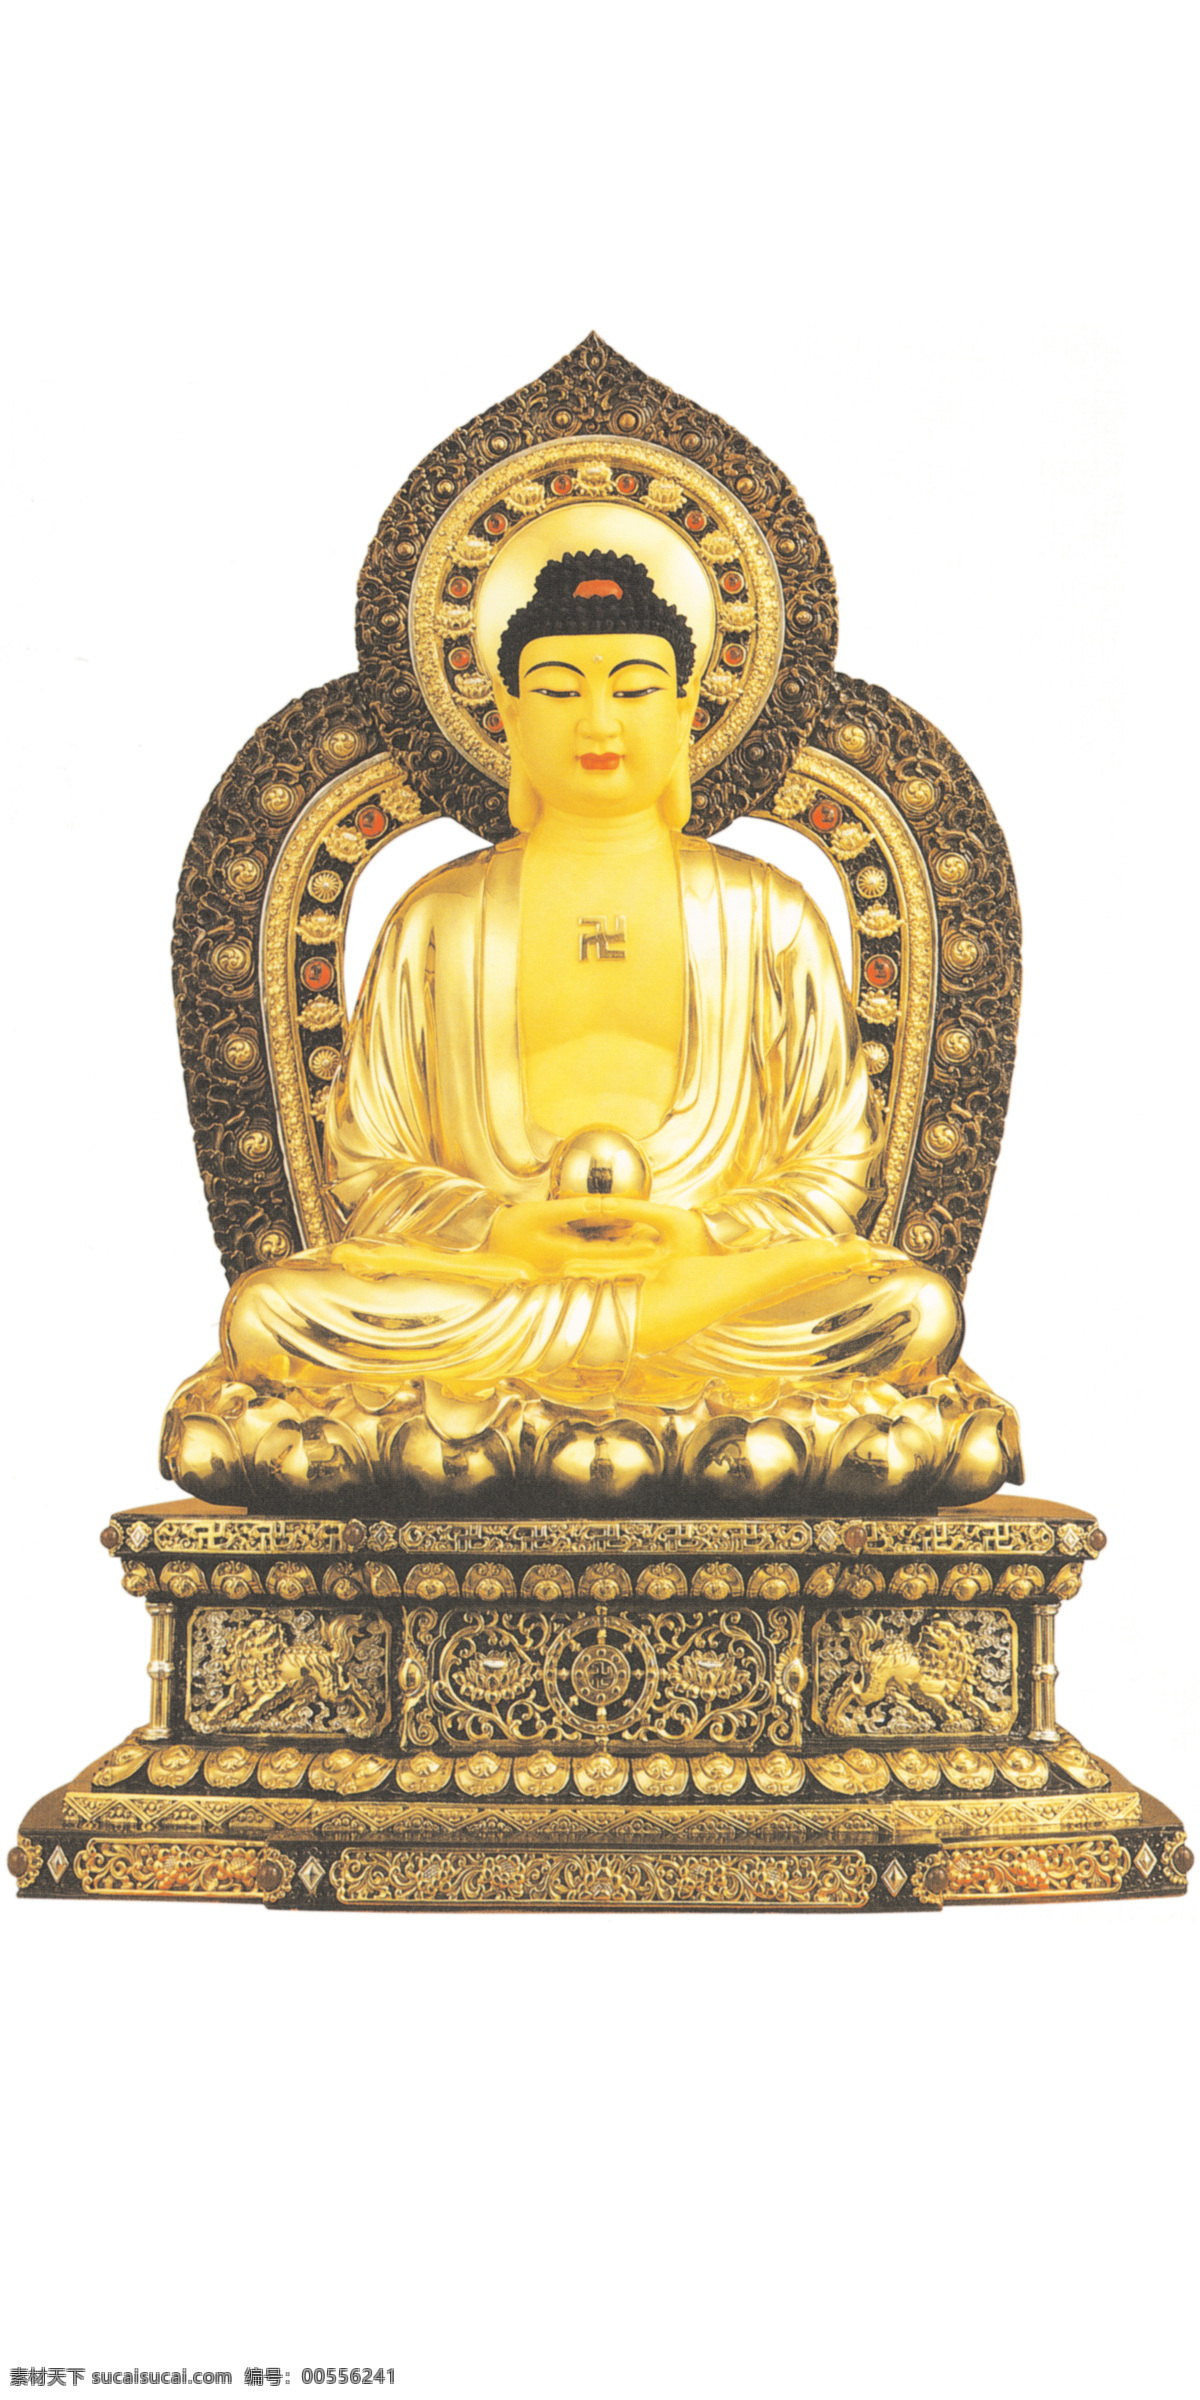 佛像 佛教人物 佛 如来佛 文化艺术 美国 鲁宾 博物馆 圣像 宗教信仰 菩萨 铜像 古代 人物 古典